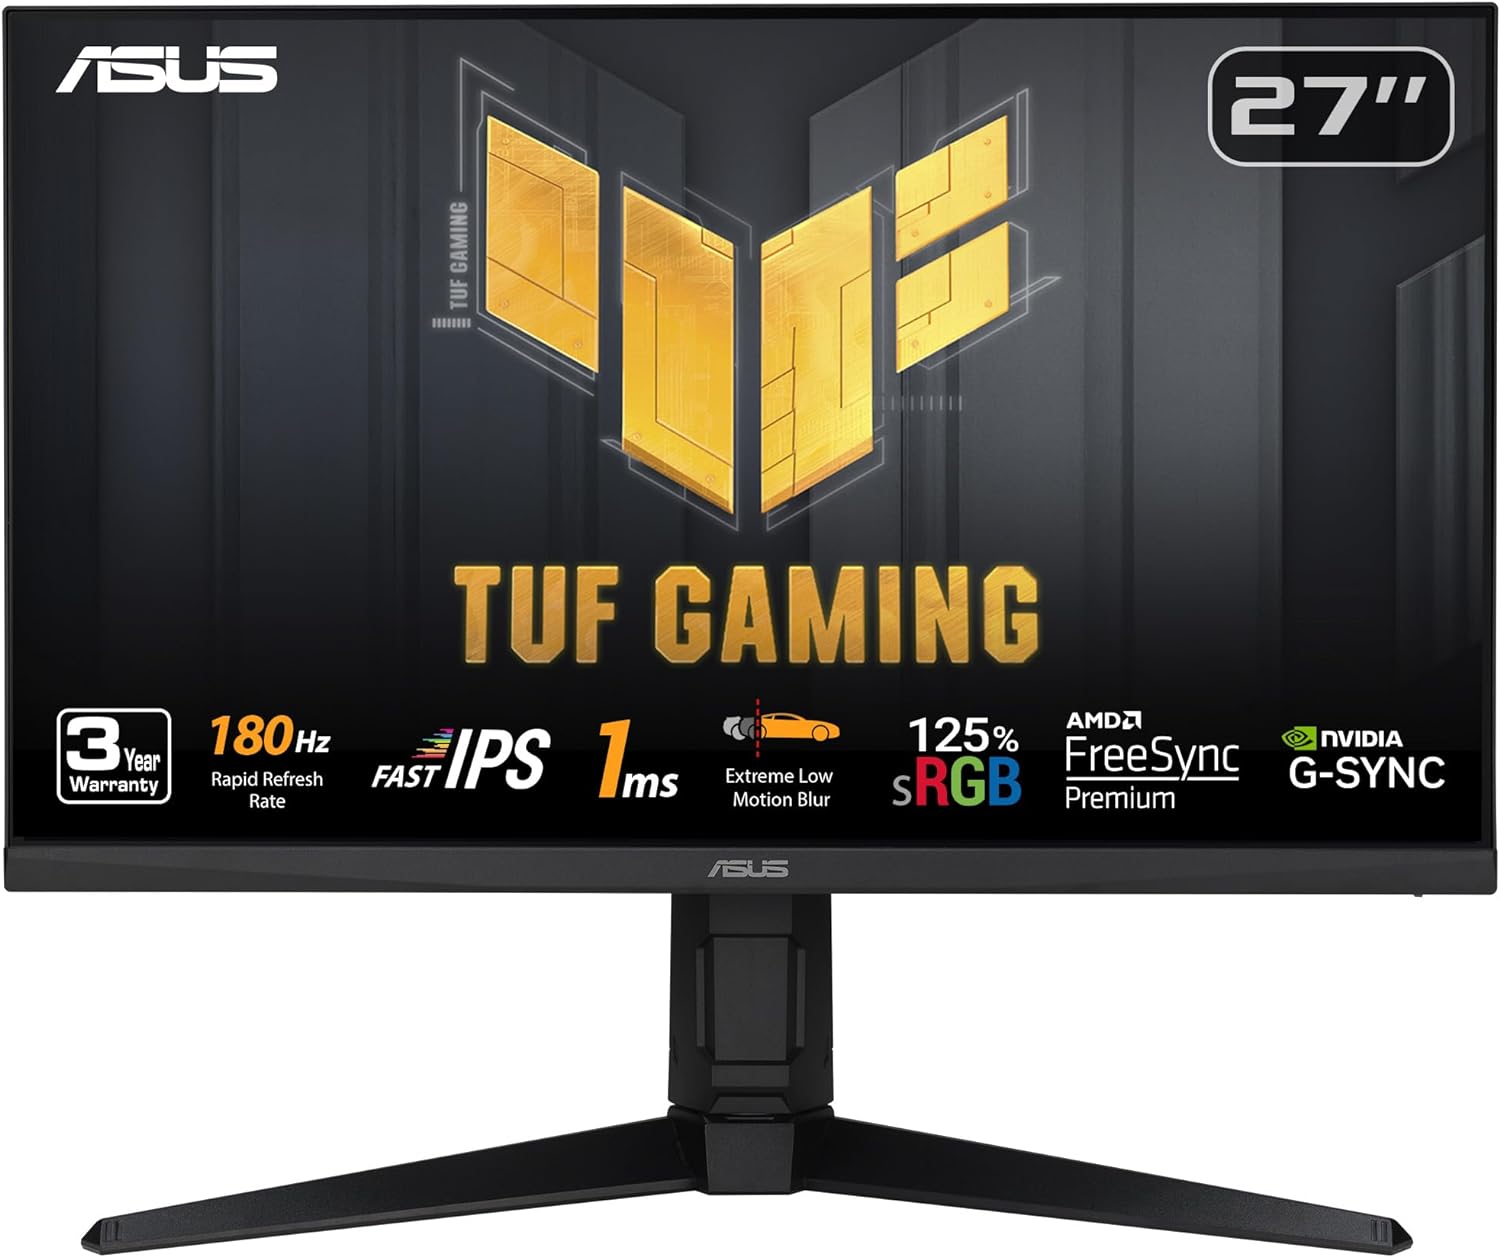 ASUS TUF Gaming Monitor